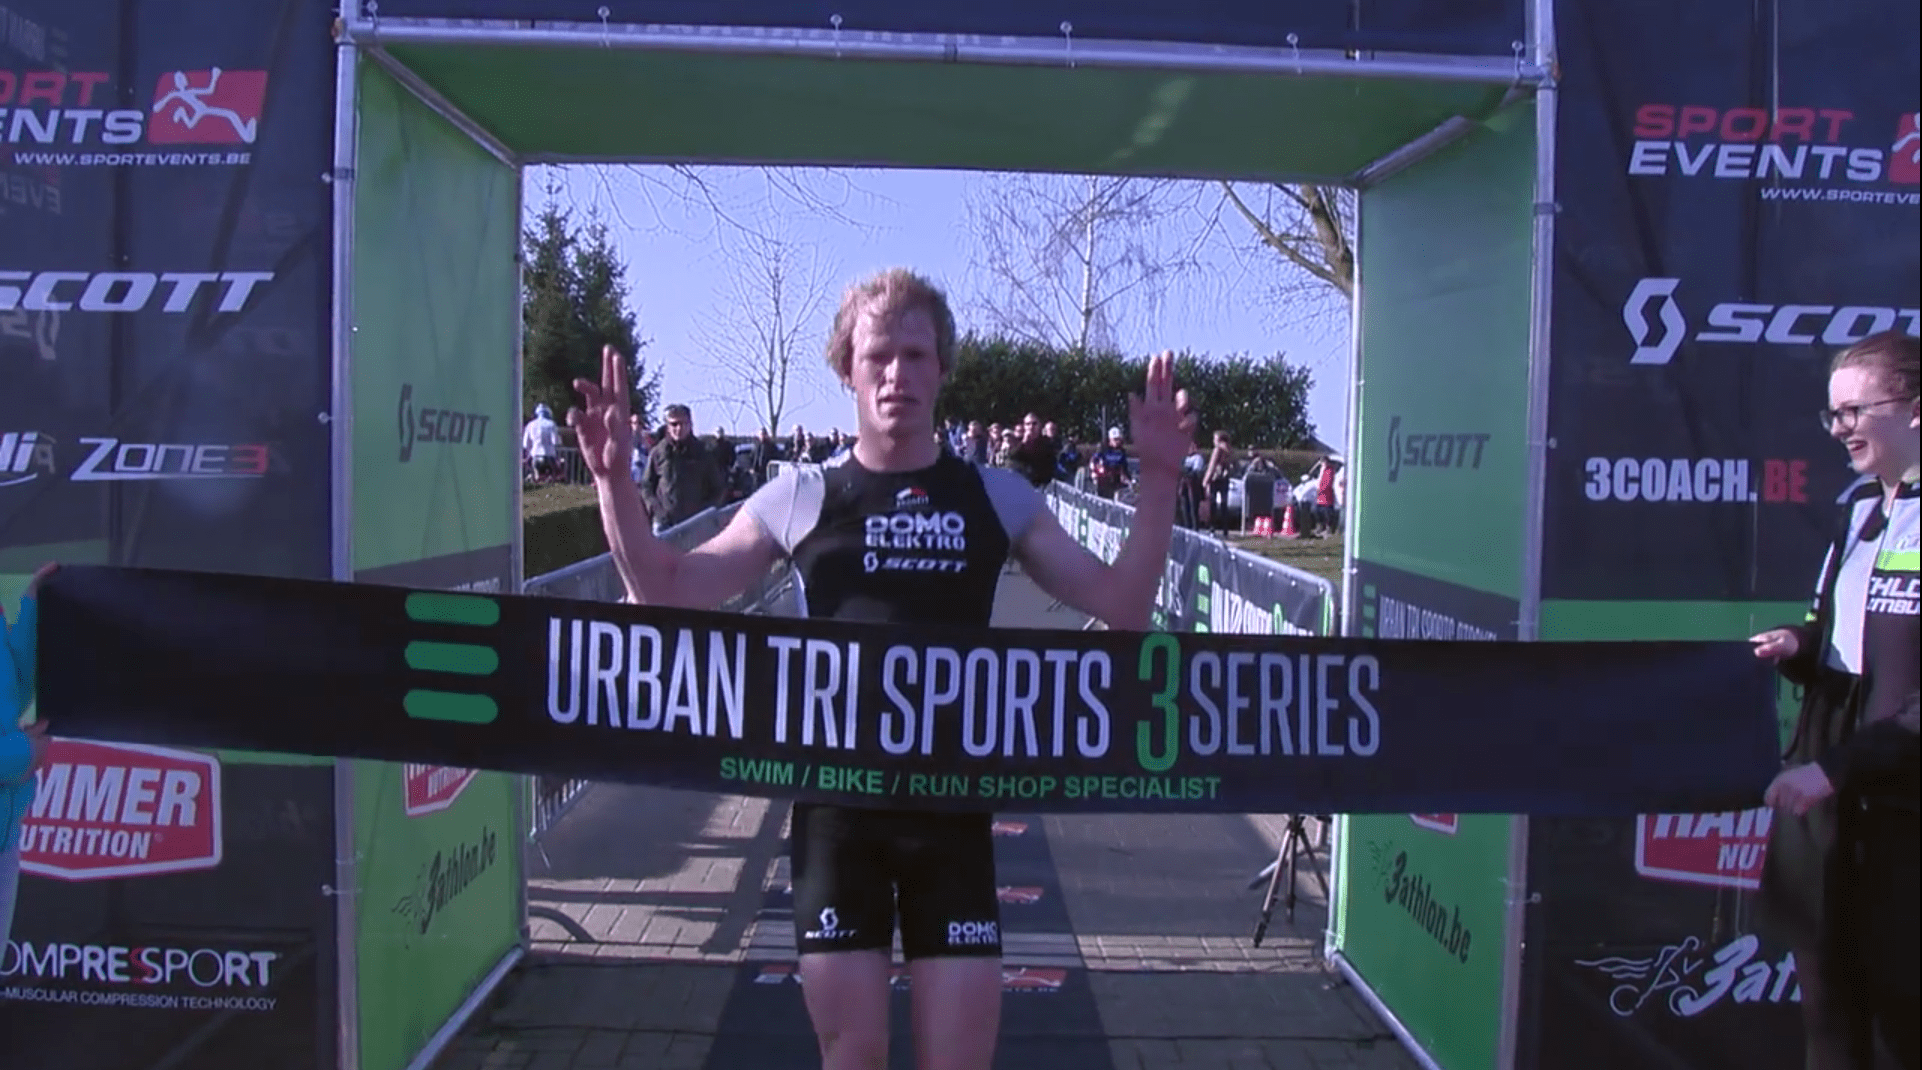 Urban trisports 3series Herderen full report on Vimeo